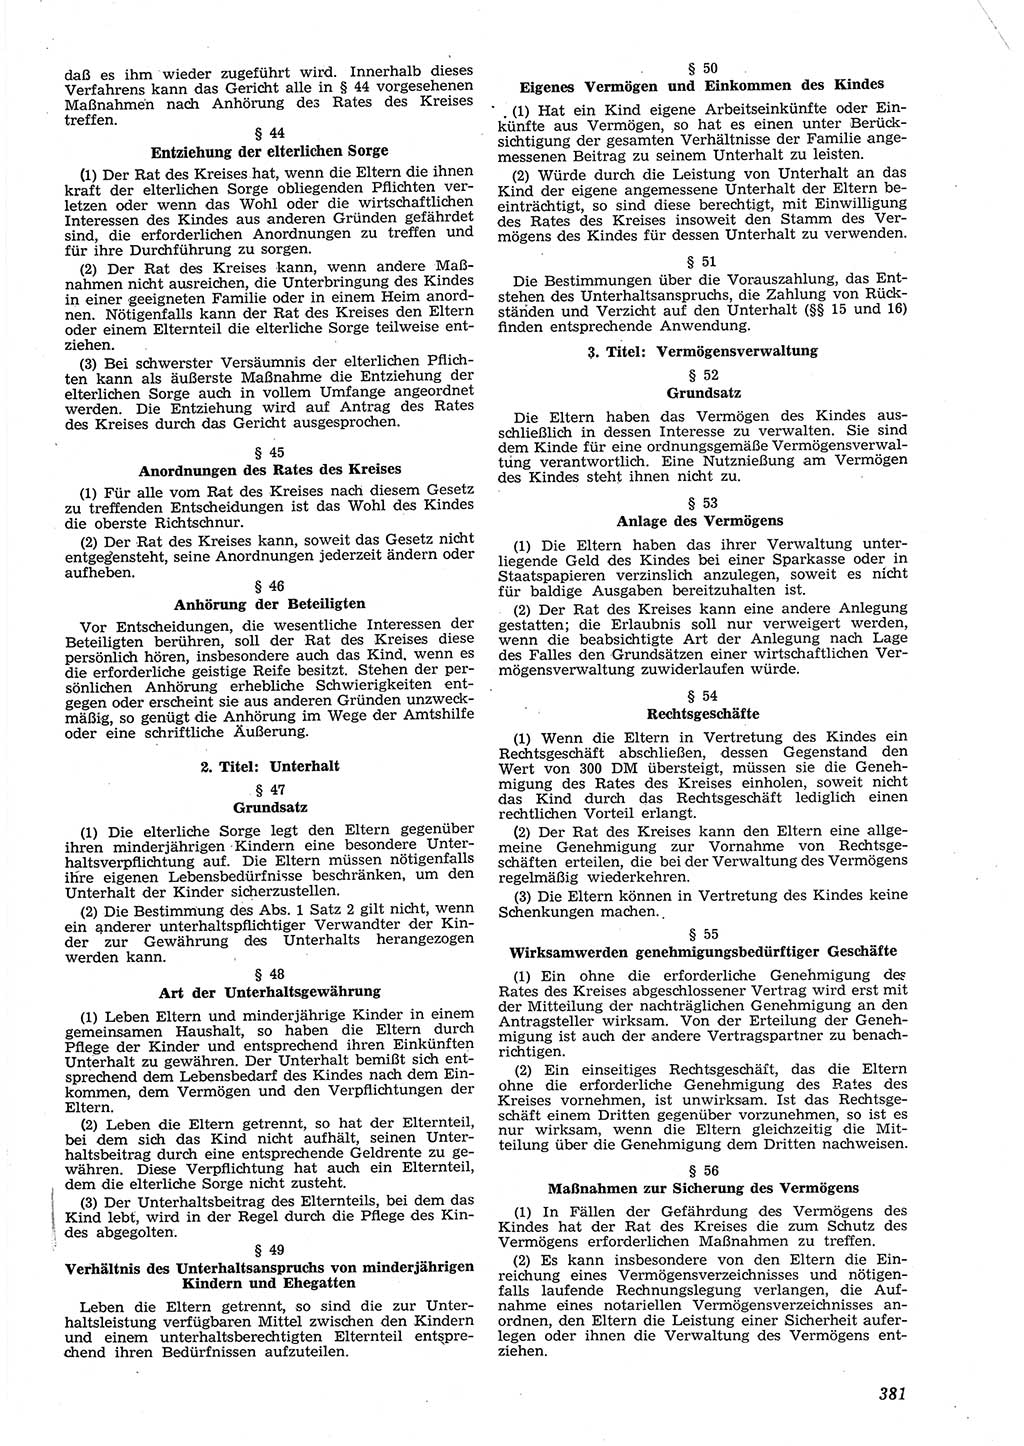 Neue Justiz (NJ), Zeitschrift für Recht und Rechtswissenschaft [Deutsche Demokratische Republik (DDR)], 8. Jahrgang 1954, Seite 381 (NJ DDR 1954, S. 381)